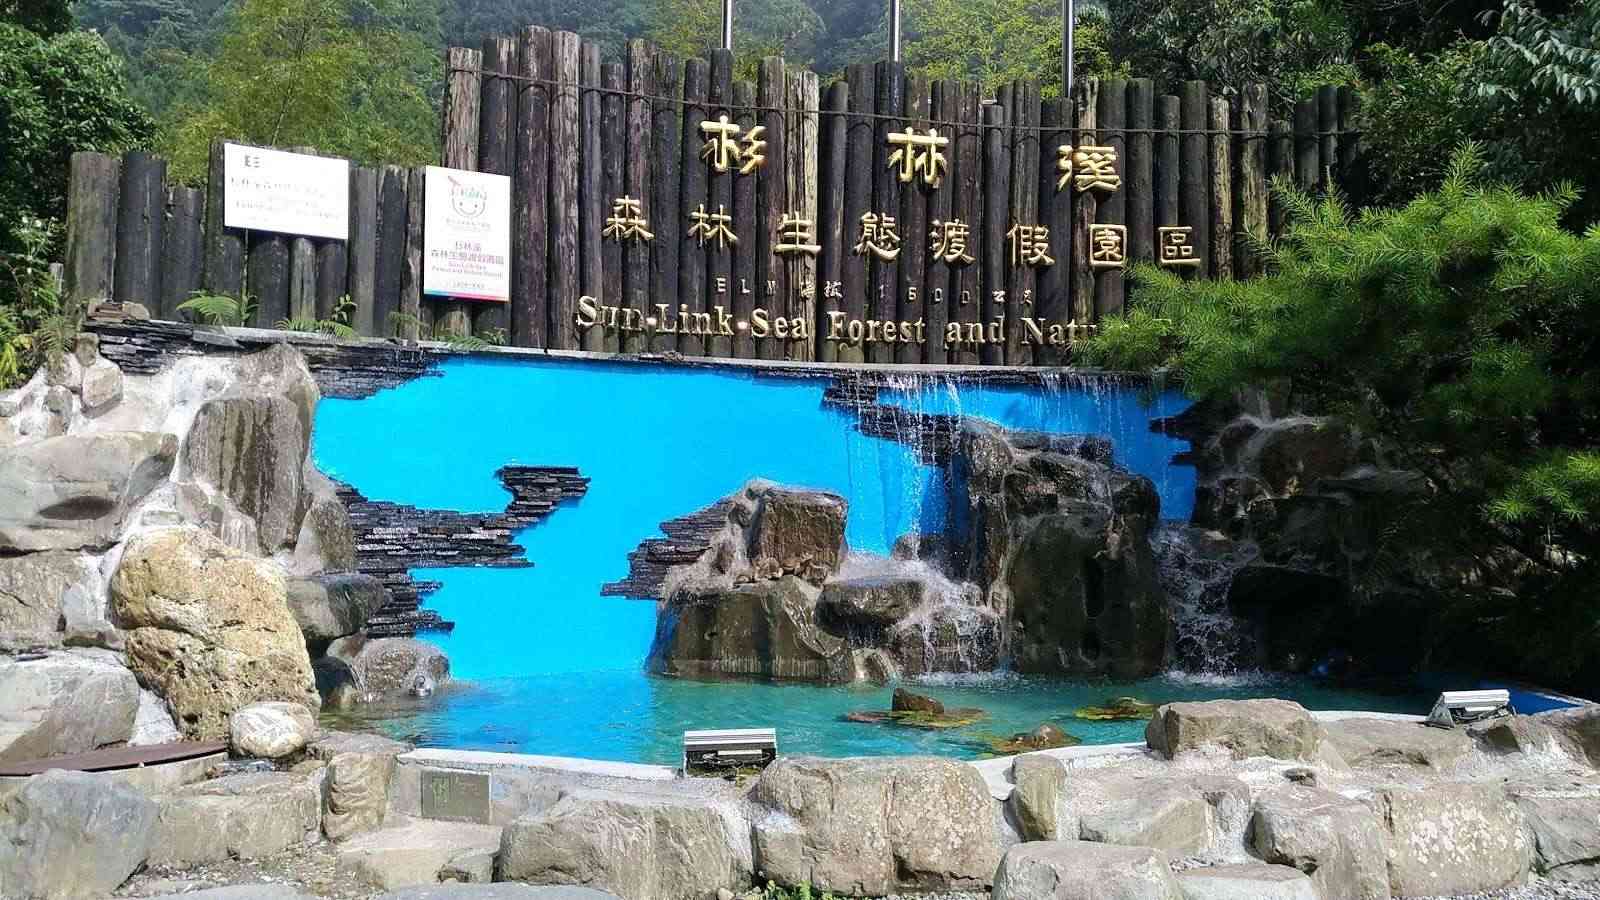 杉林溪森林生態渡假園區大飯店/ 攝影者: chun-chin chang

(由第三方資訊提供)